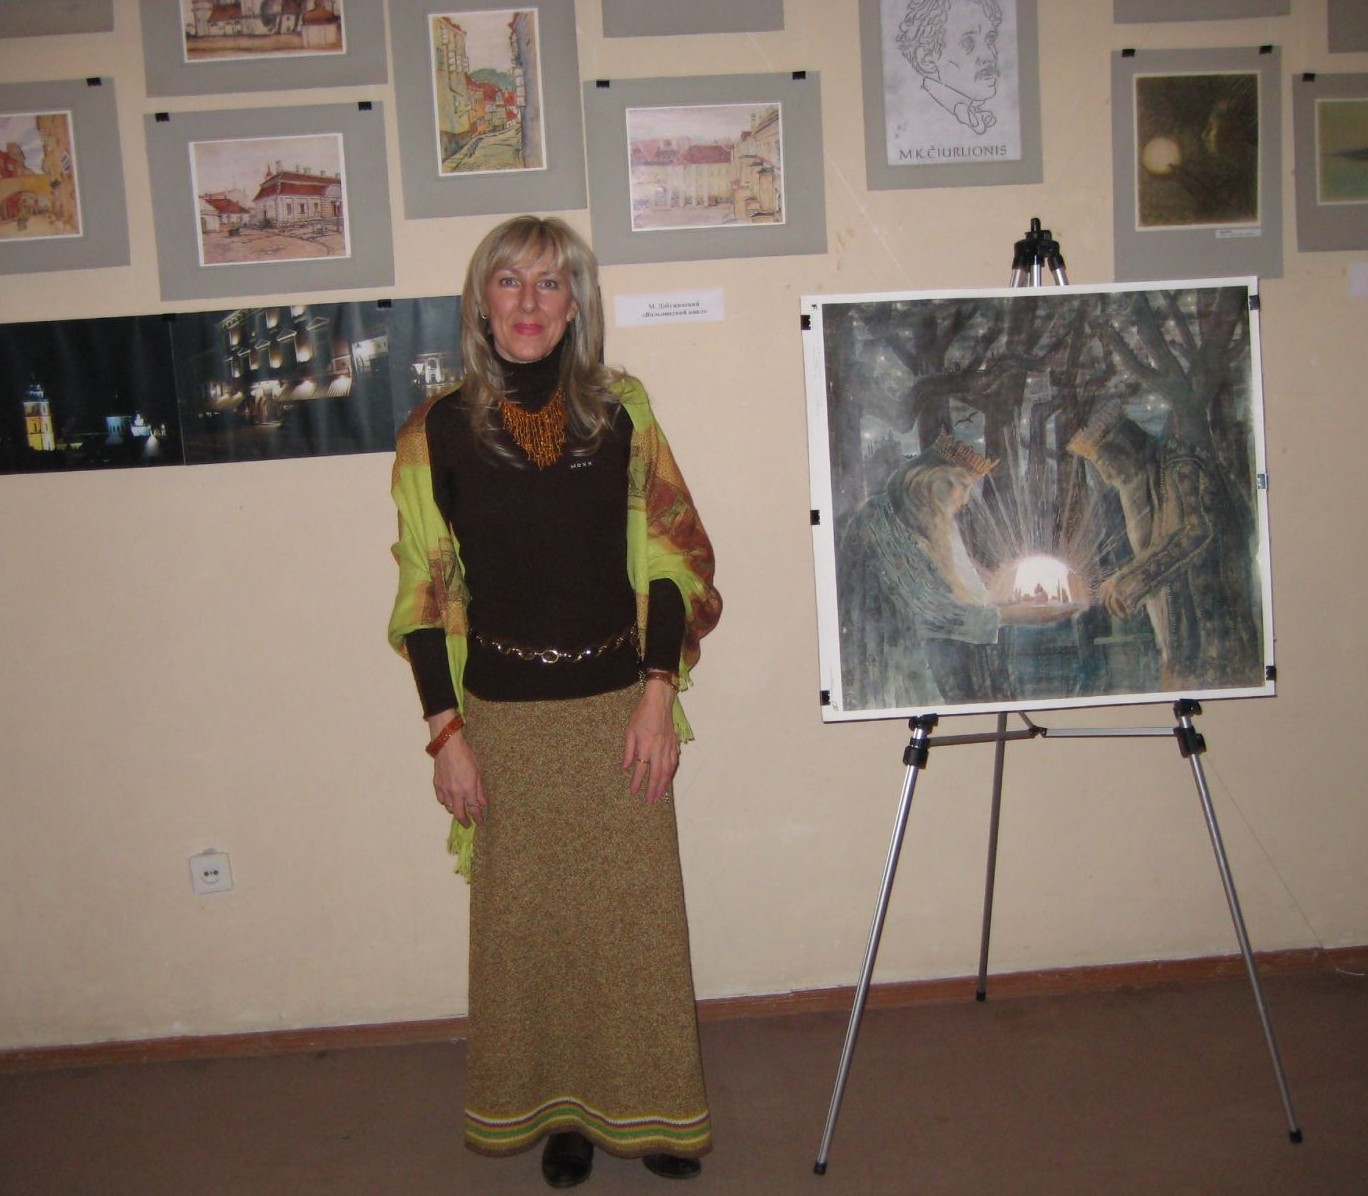 Marija Valentina Raulusevičiūtė - Loginova prie parodos, skirtos Čiurlioniui ir Dobužinskiui stendų Simferopolio etnografijios muziejuje